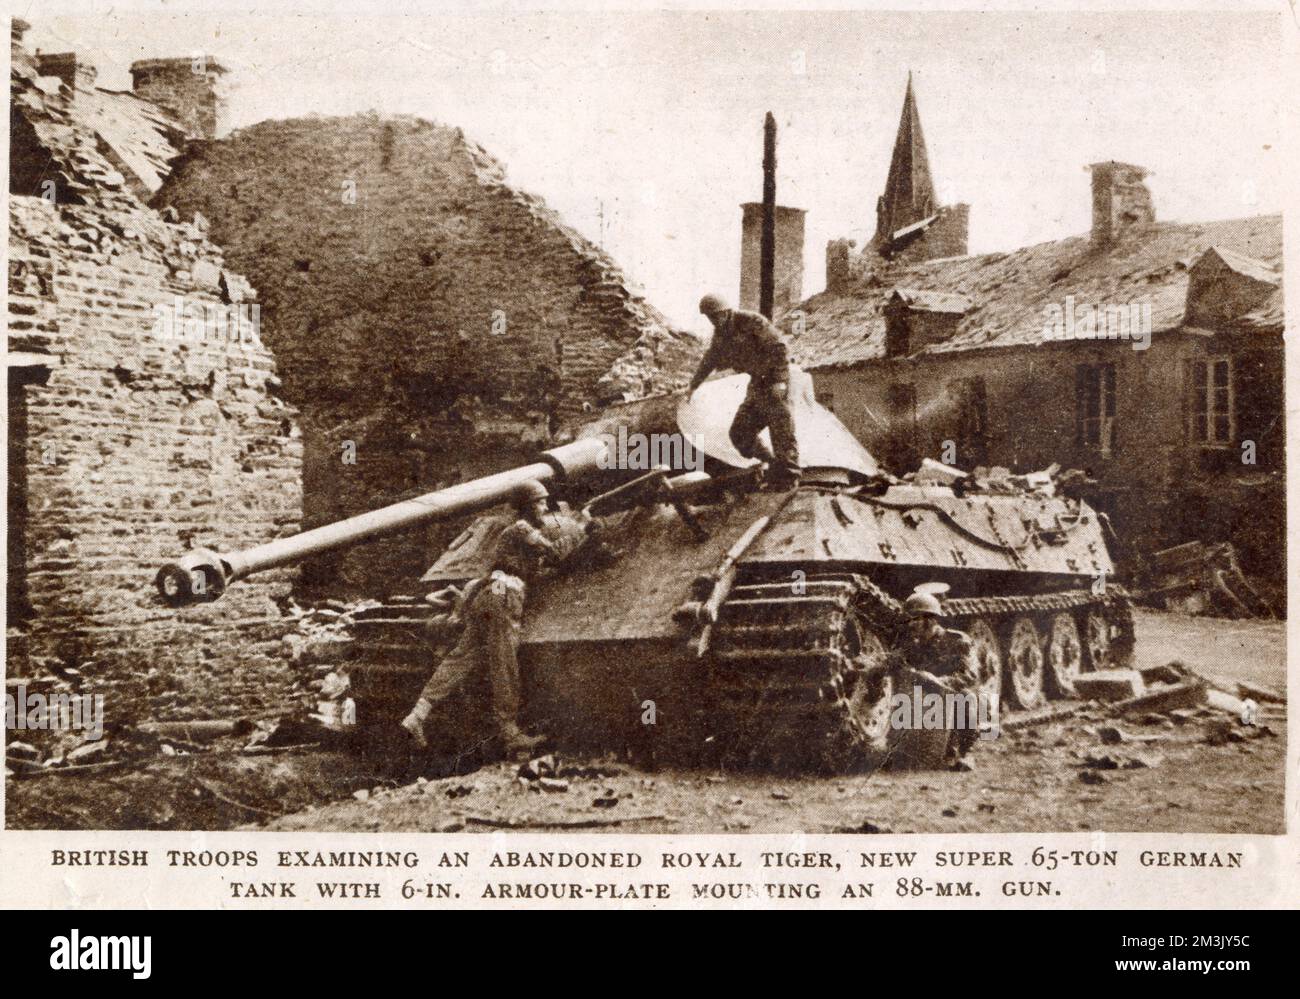 Mehrere britische Soldaten untersuchten einen verlassenen Tigerpanzer in der Nähe von Falaise, 1944. Dieser schwere Tank soll 65 Tonnen wiegen, mit einer 6-Zoll-Panzerung und einer 88-mm-Pistole. Stockfoto